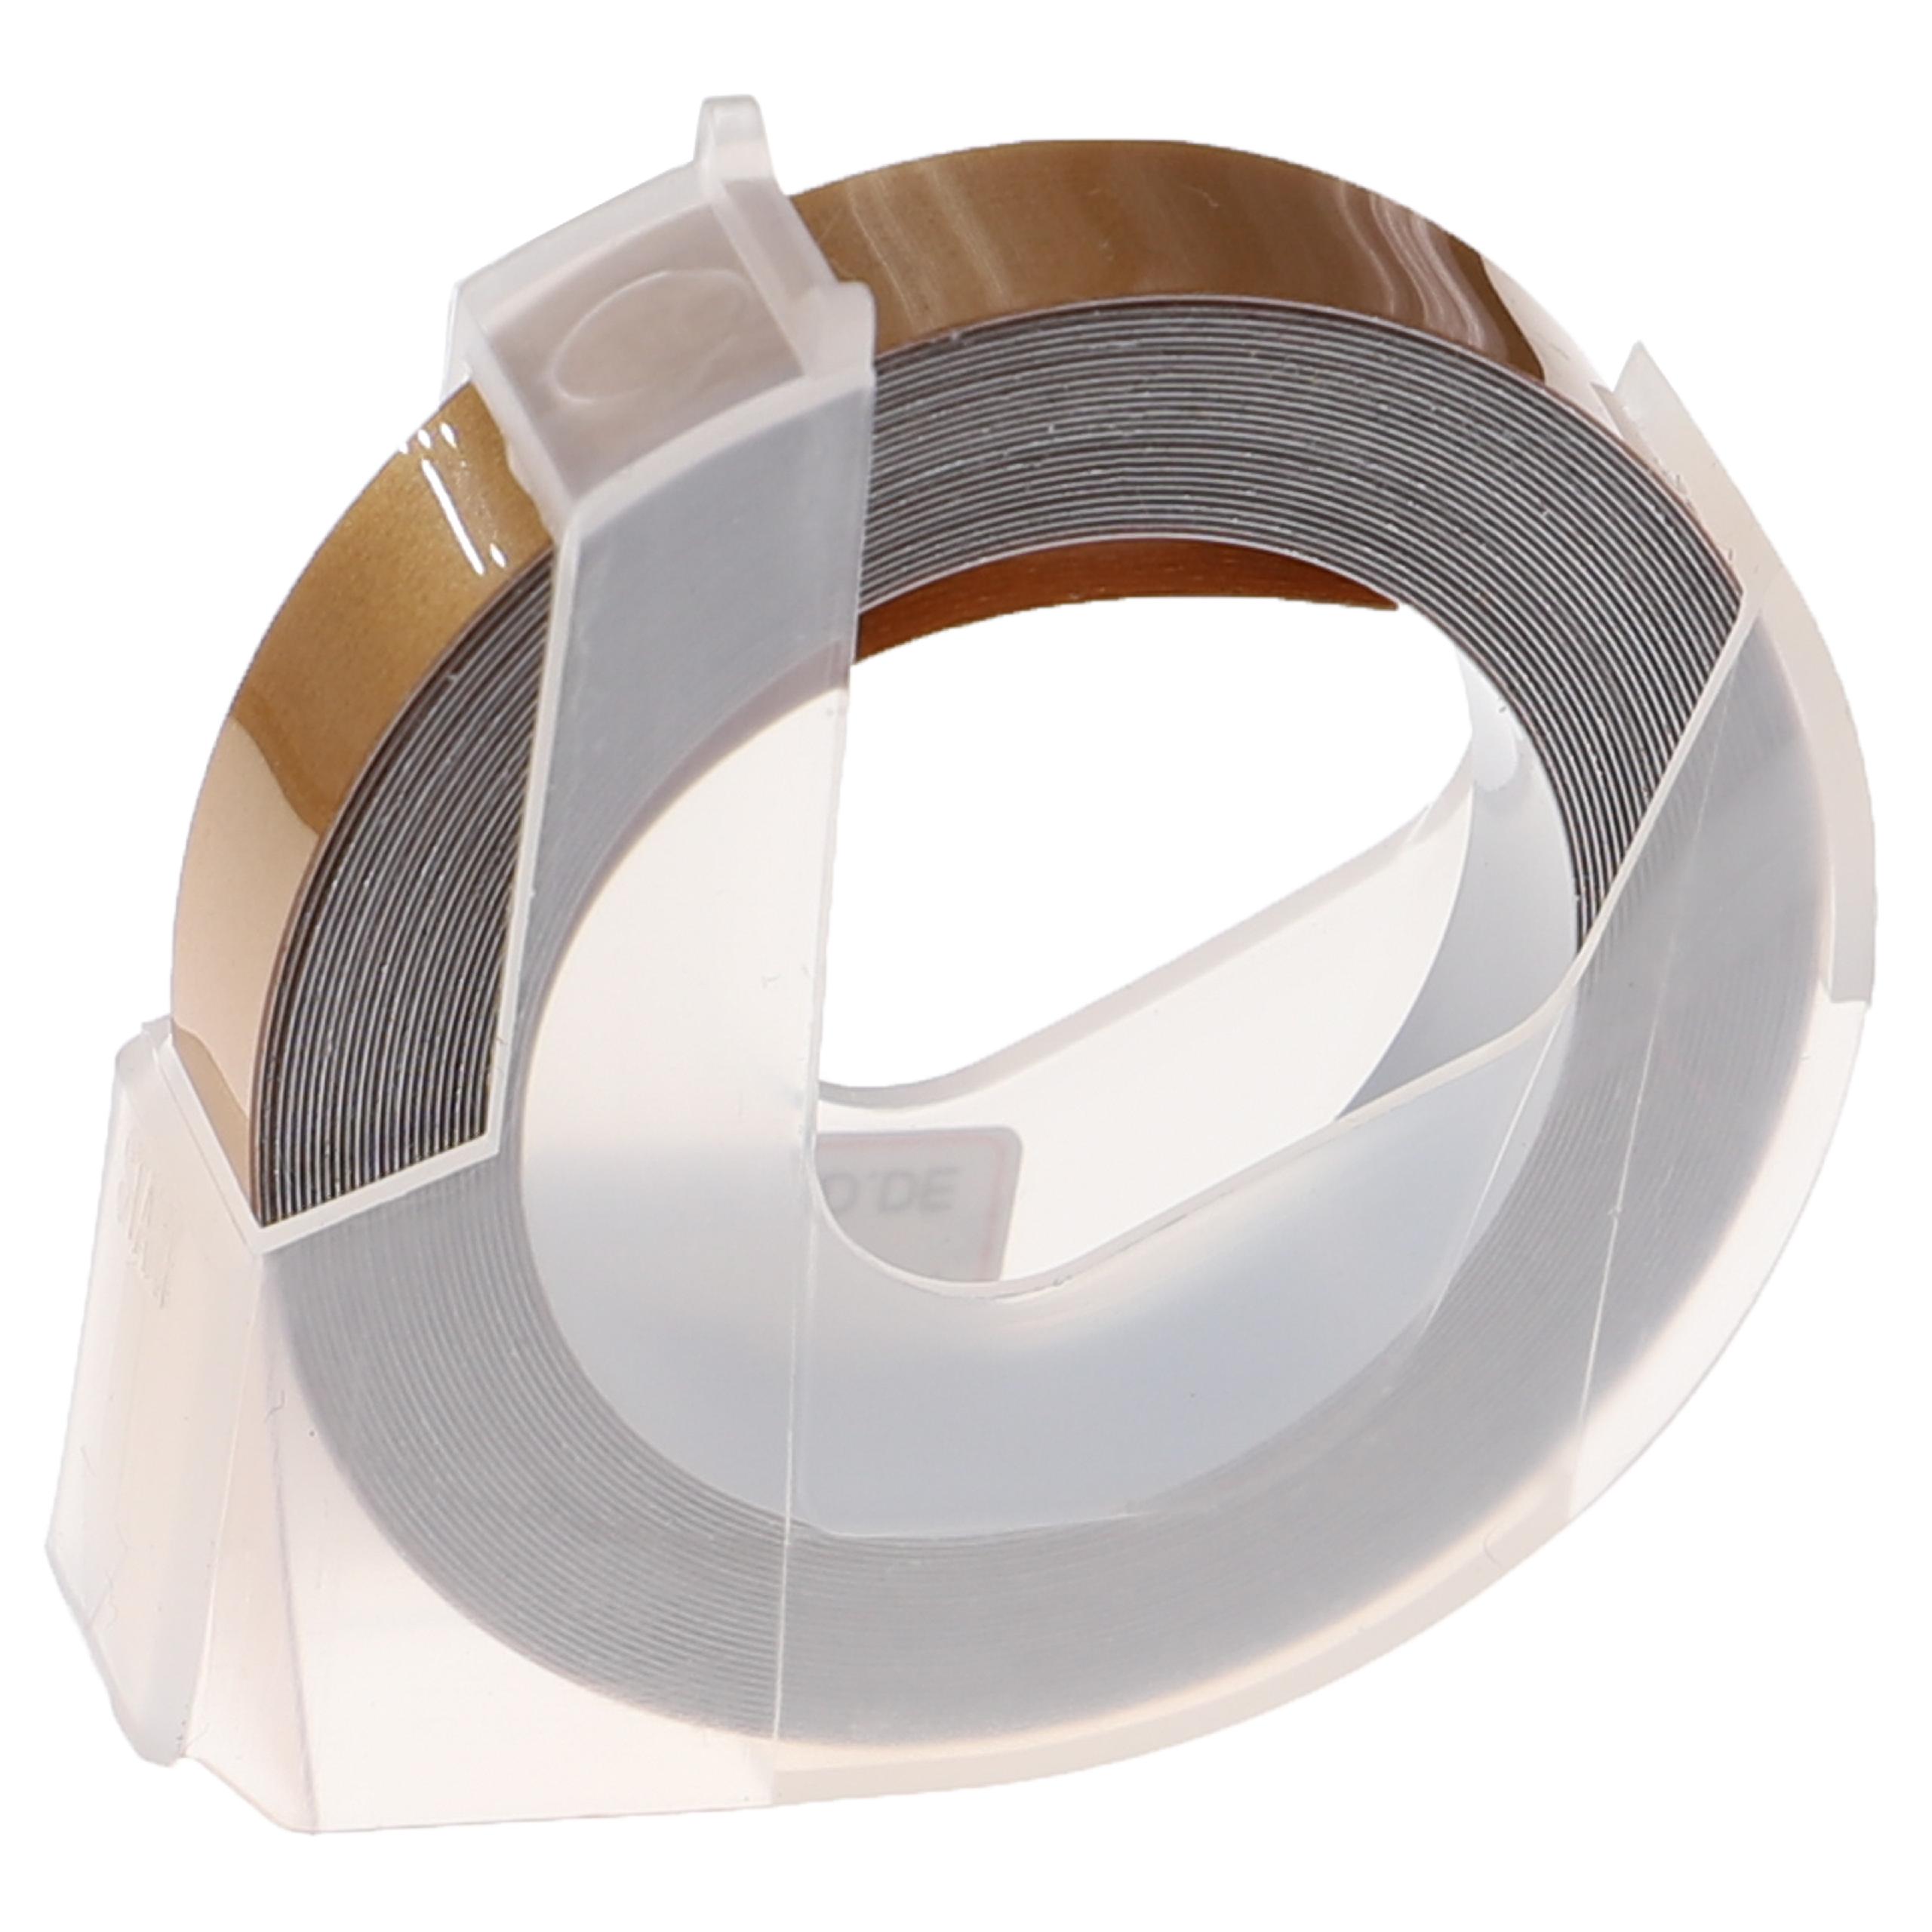 Casete cinta relieve 3D Casete cinta escritura reemplaza Dymo 0898140 Blanco su Oro